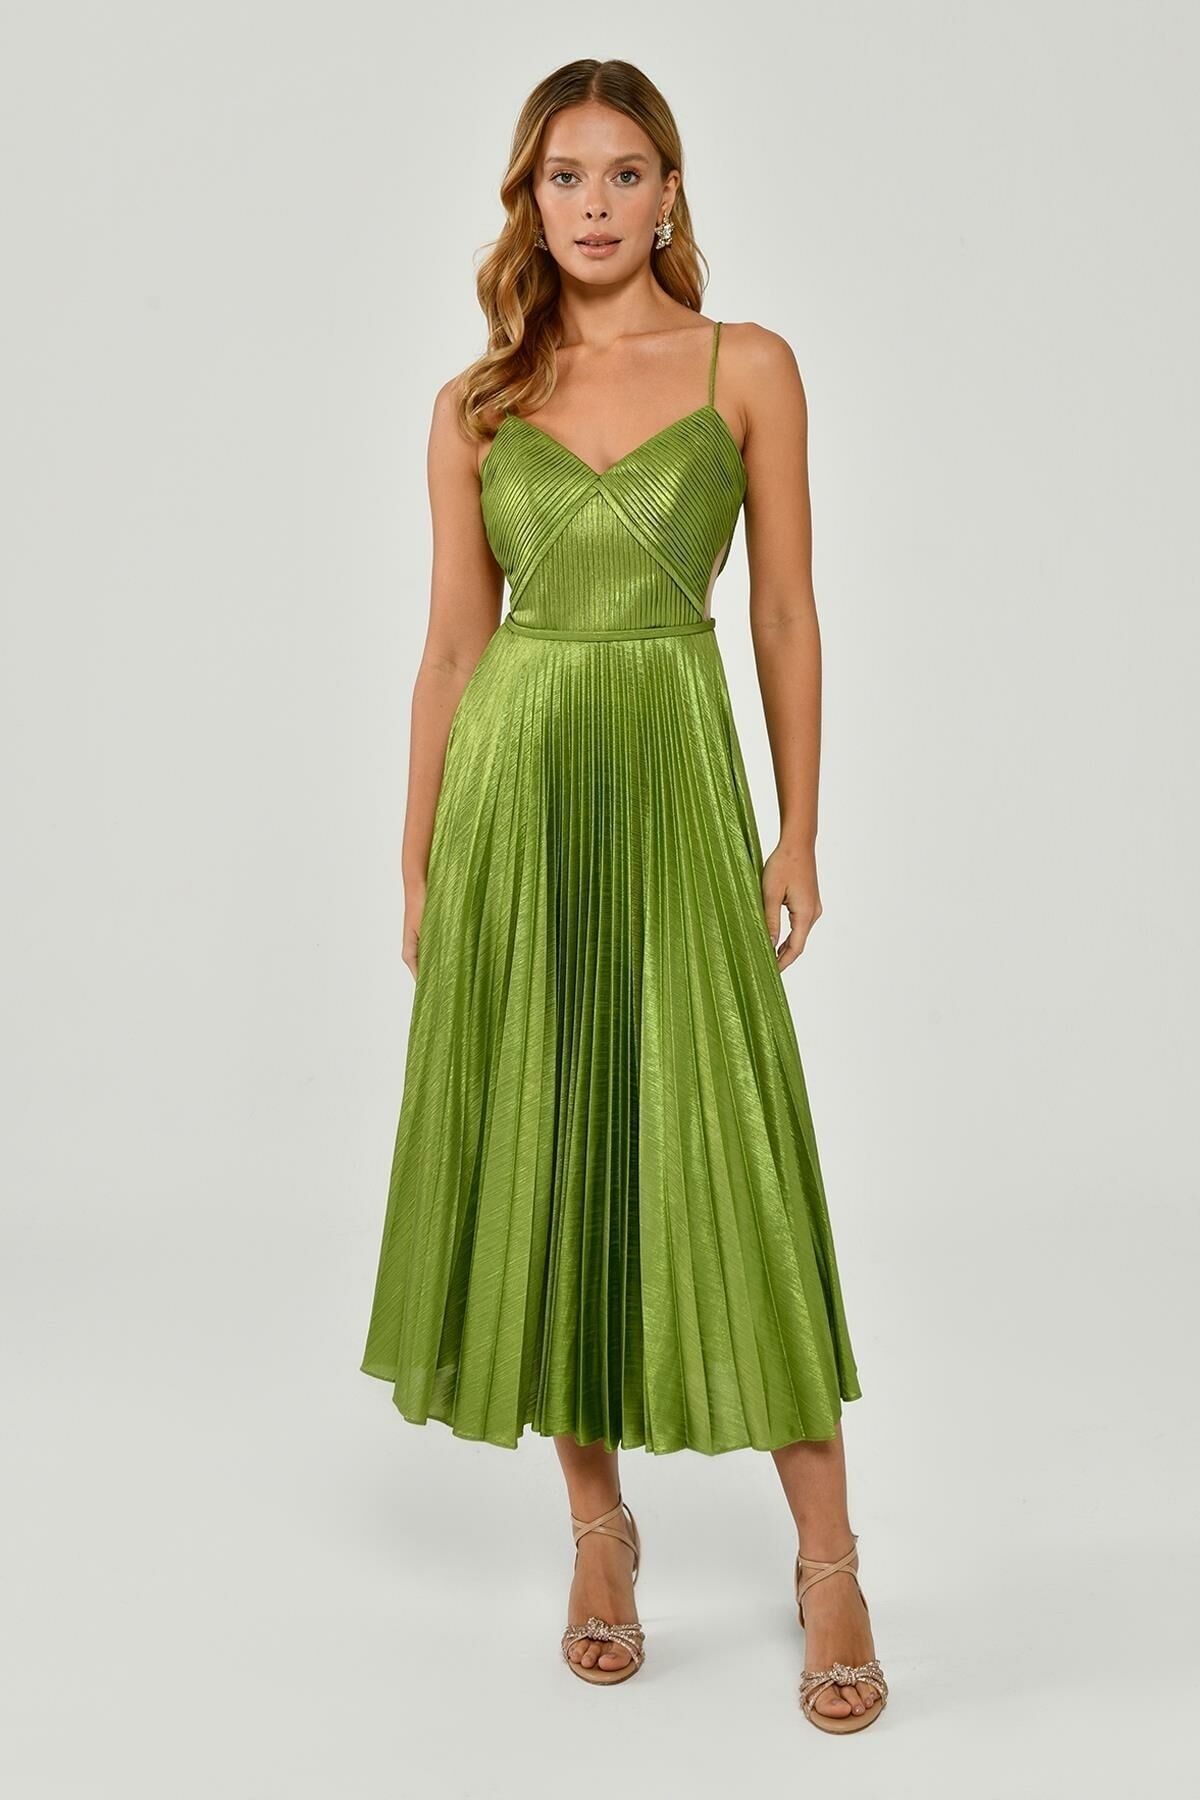 ALFABETA Kadın Ip Askılı Pliseli Parlak Kumaş Midi Fıstık Yeşili Abiye & Mezuniyet Elbisesi Ab6254-fıstık